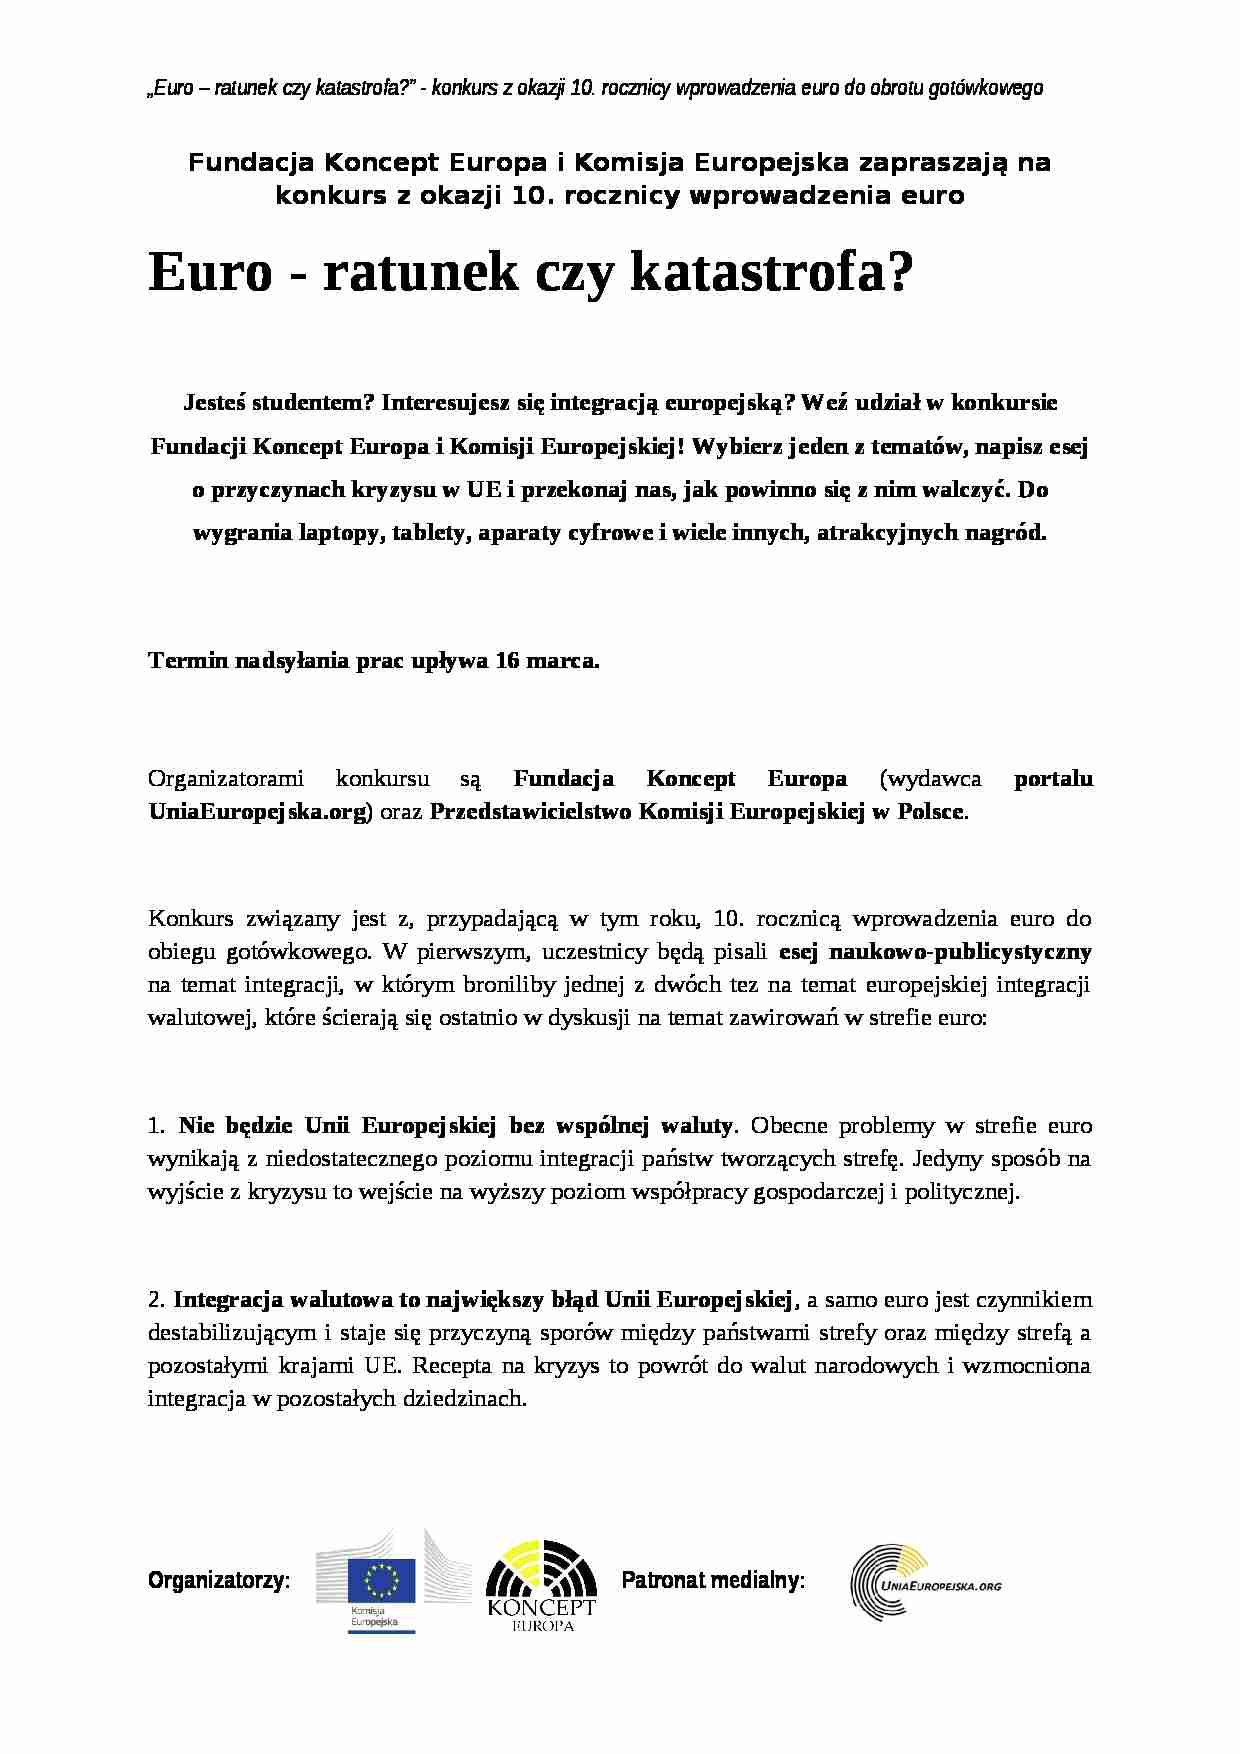 Informacja prasowa: Euro - ratunek czy katastrofa - strona 1